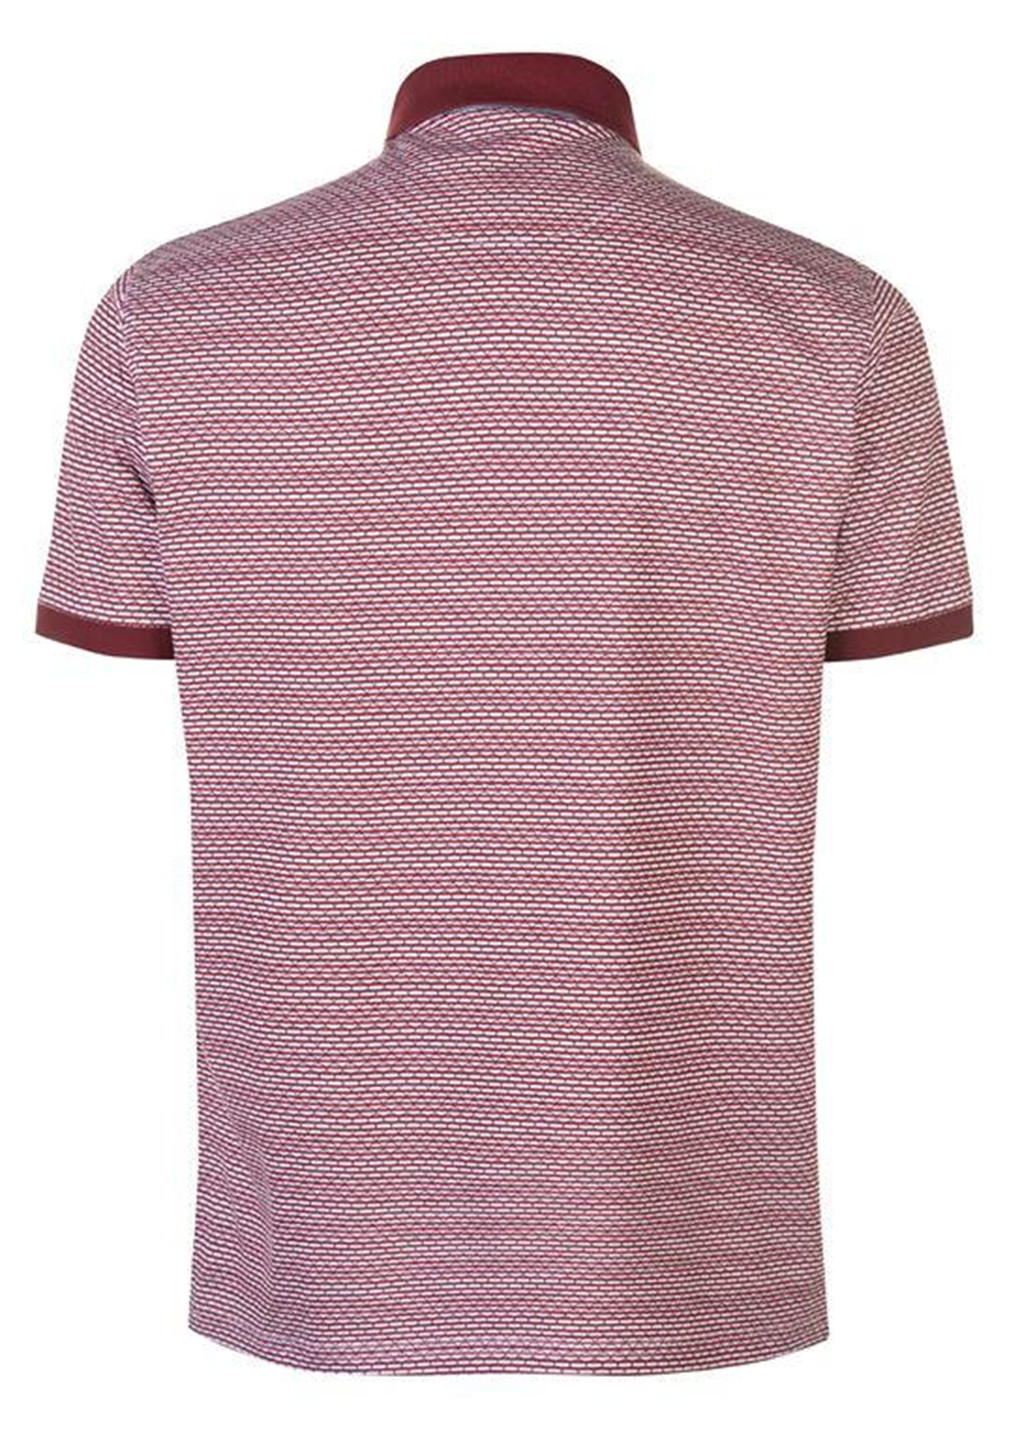 Светло-бордовая футболка-поло для мужчин Pierre Cardin с абстрактным узором